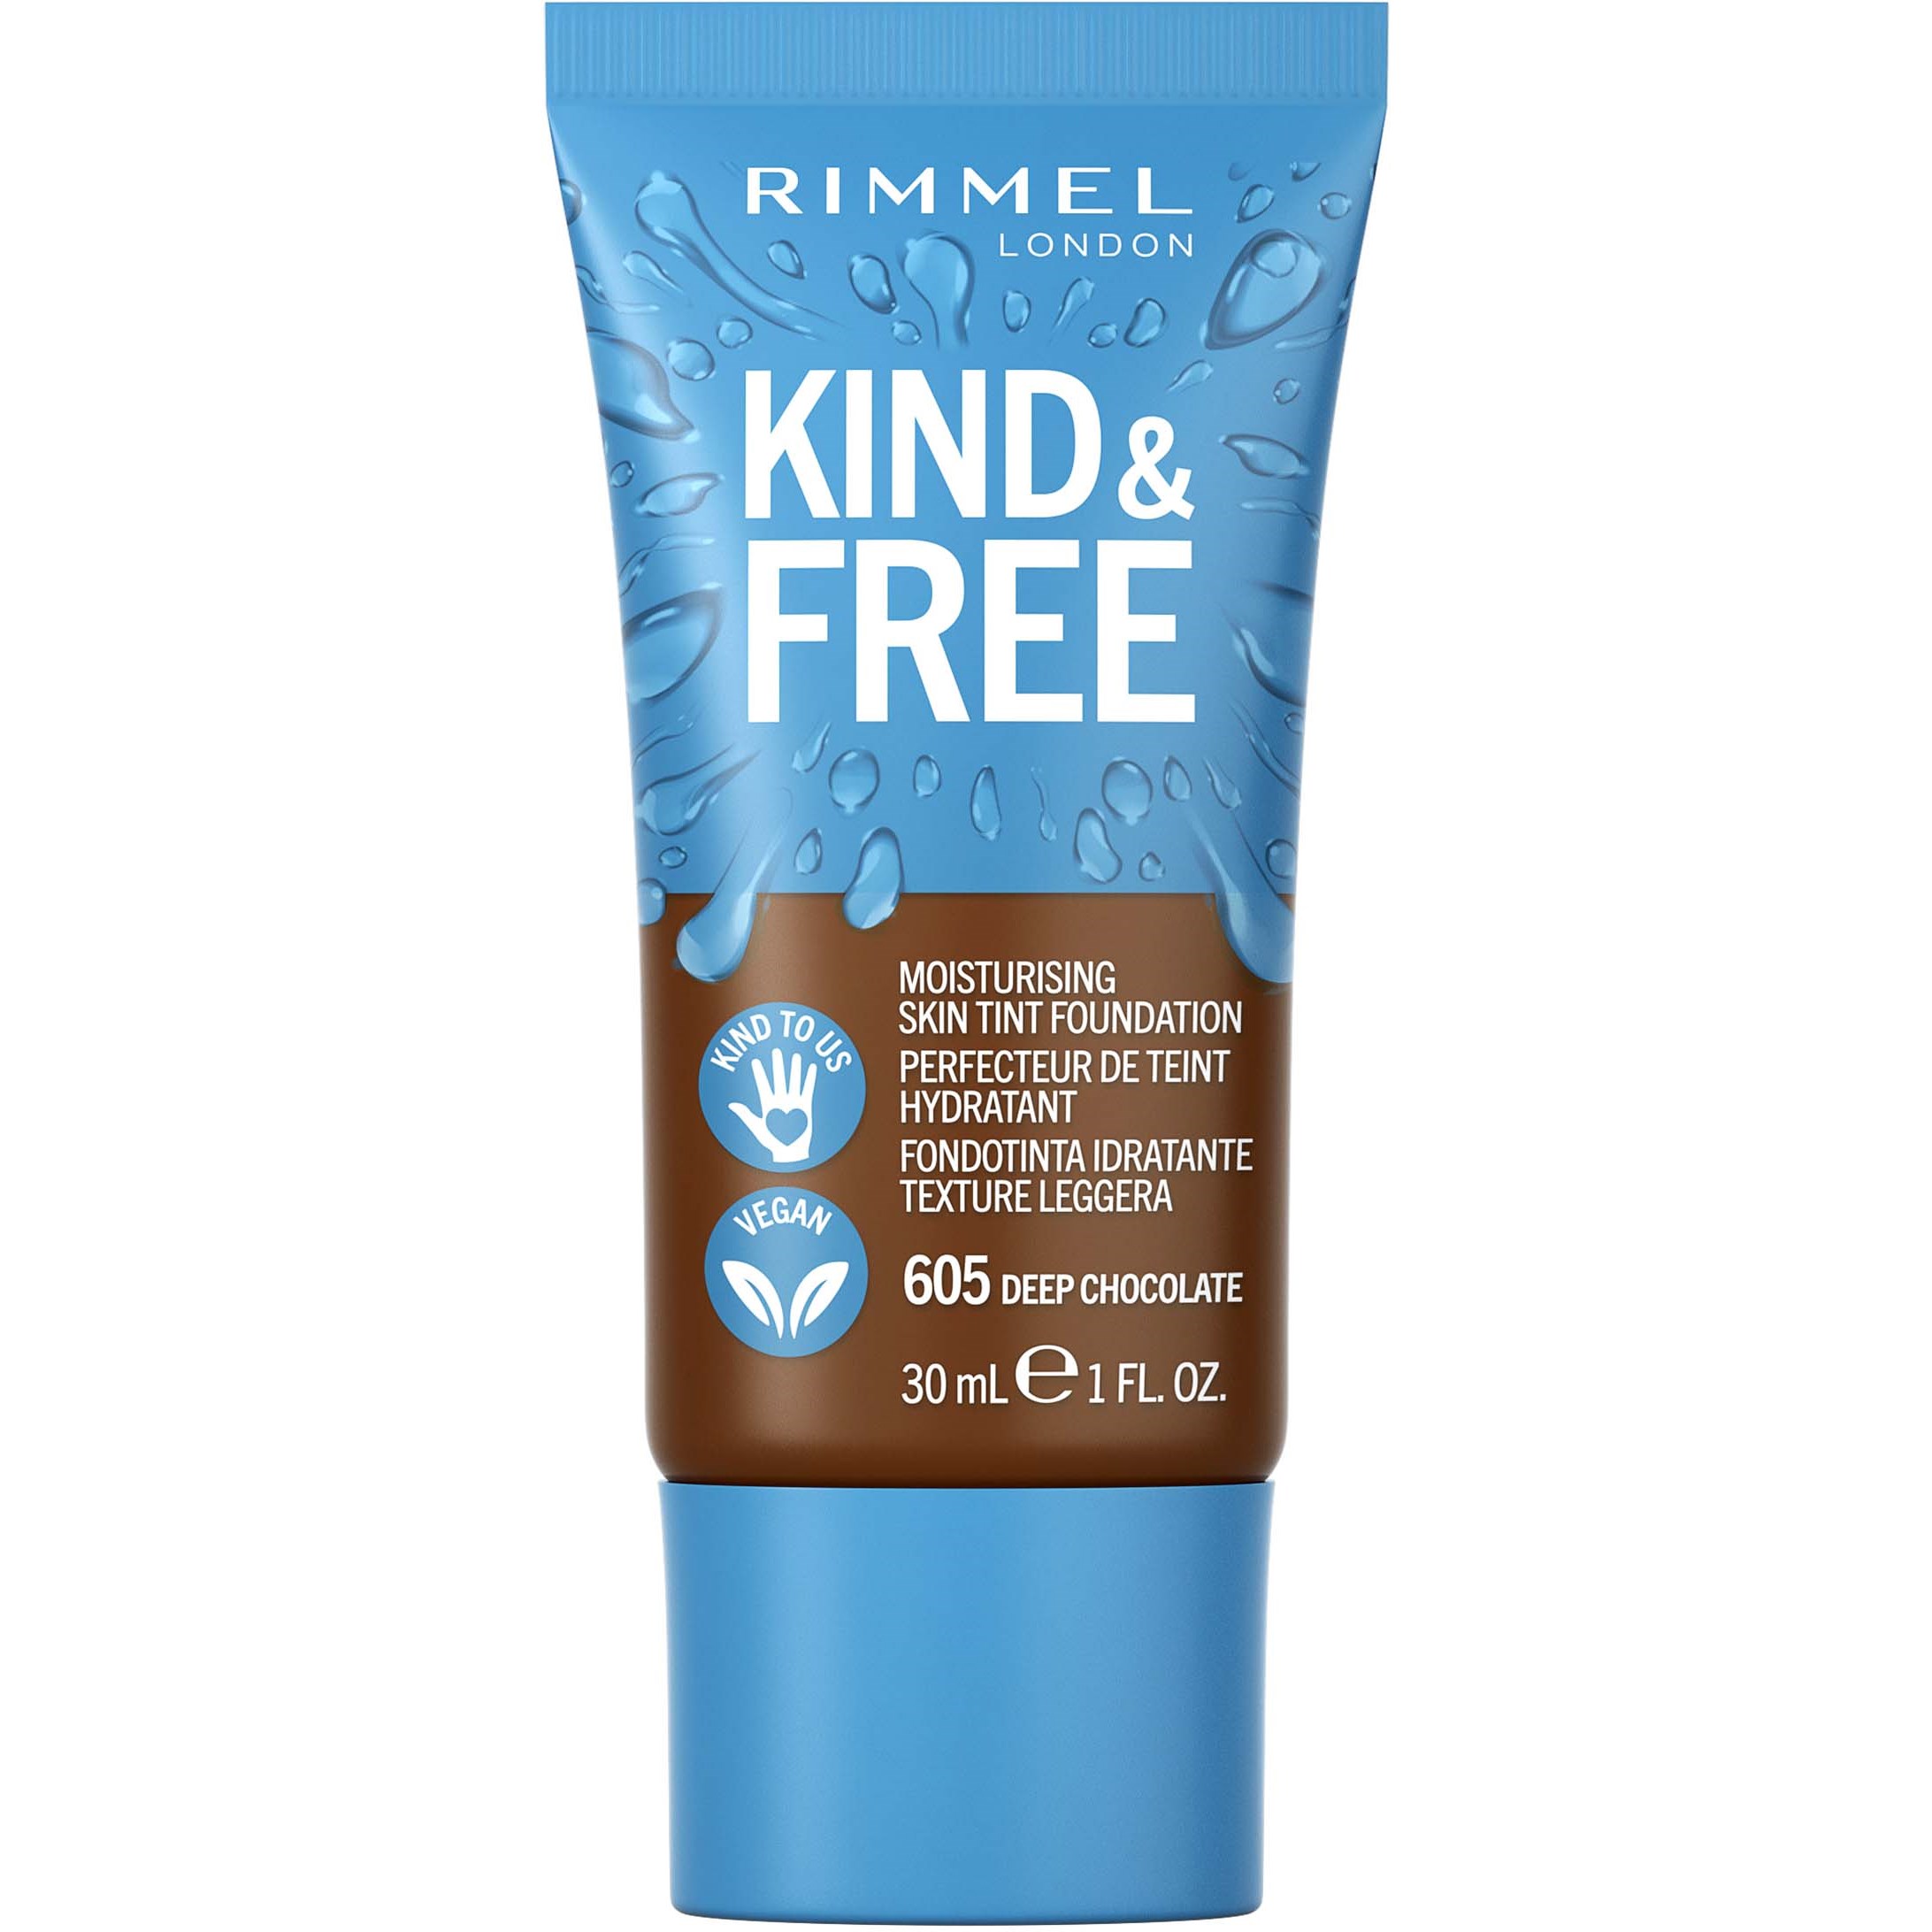 Zdjęcia - Podkład i baza pod makijaż Rimmel Kind & Free Kind&Free skin tint - podkład do twarzy 605 De 